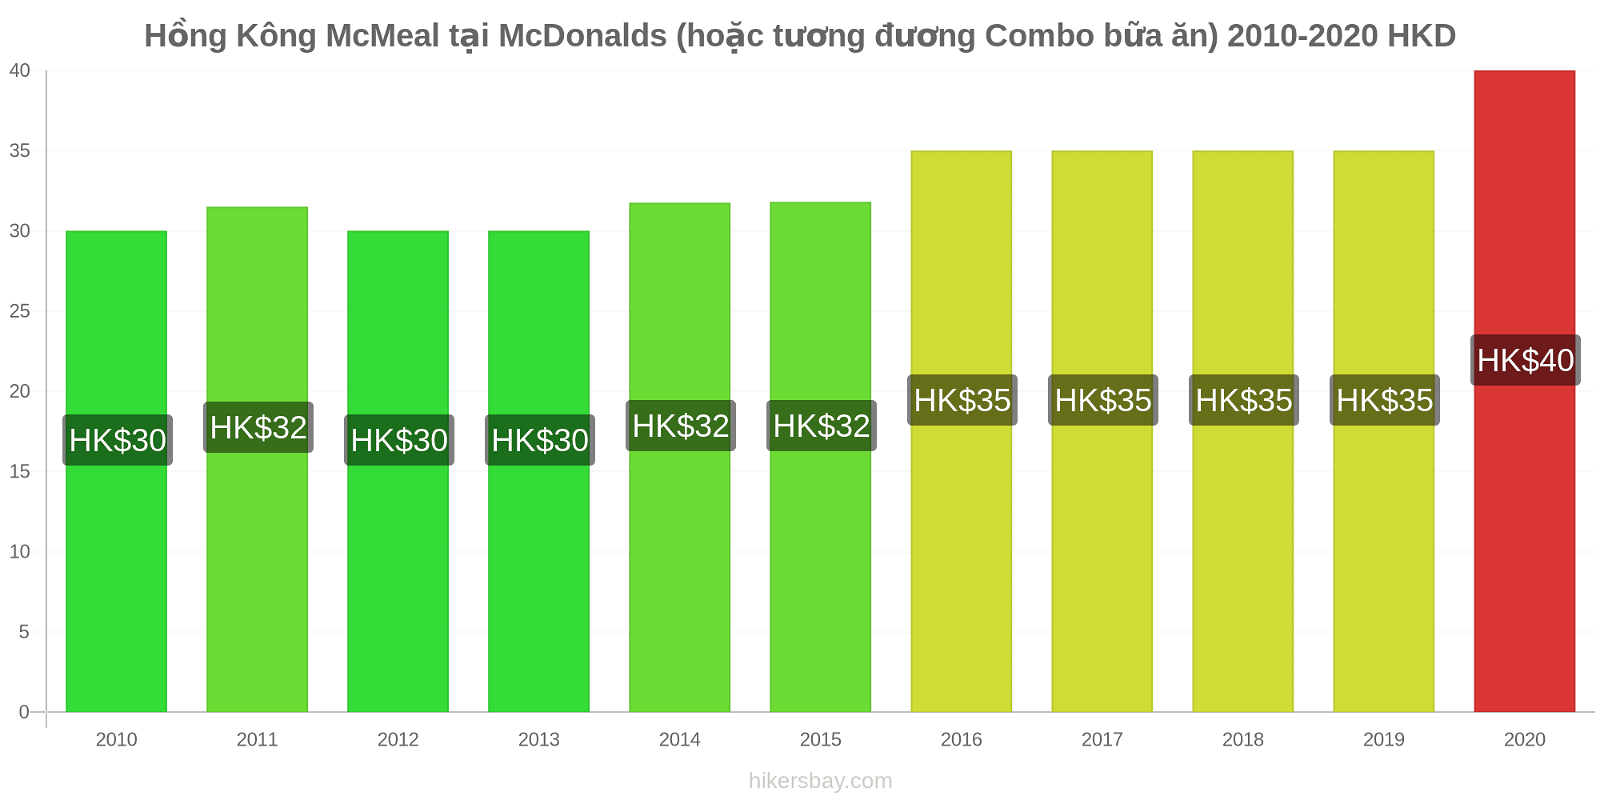 Hồng Kông thay đổi giá McMeal tại McDonalds (hoặc tương đương Combo bữa ăn) hikersbay.com